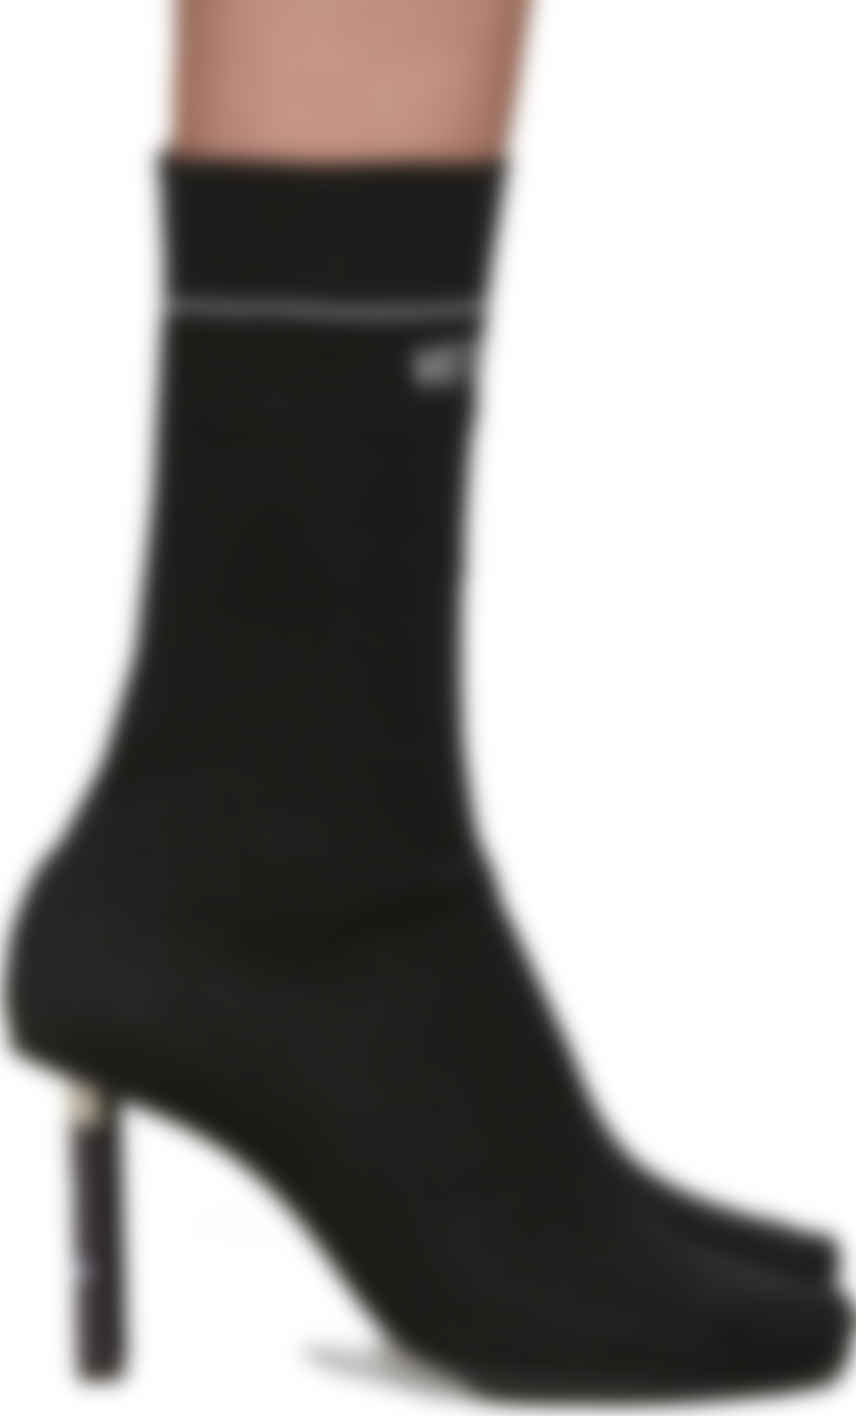 black glitter sock boots